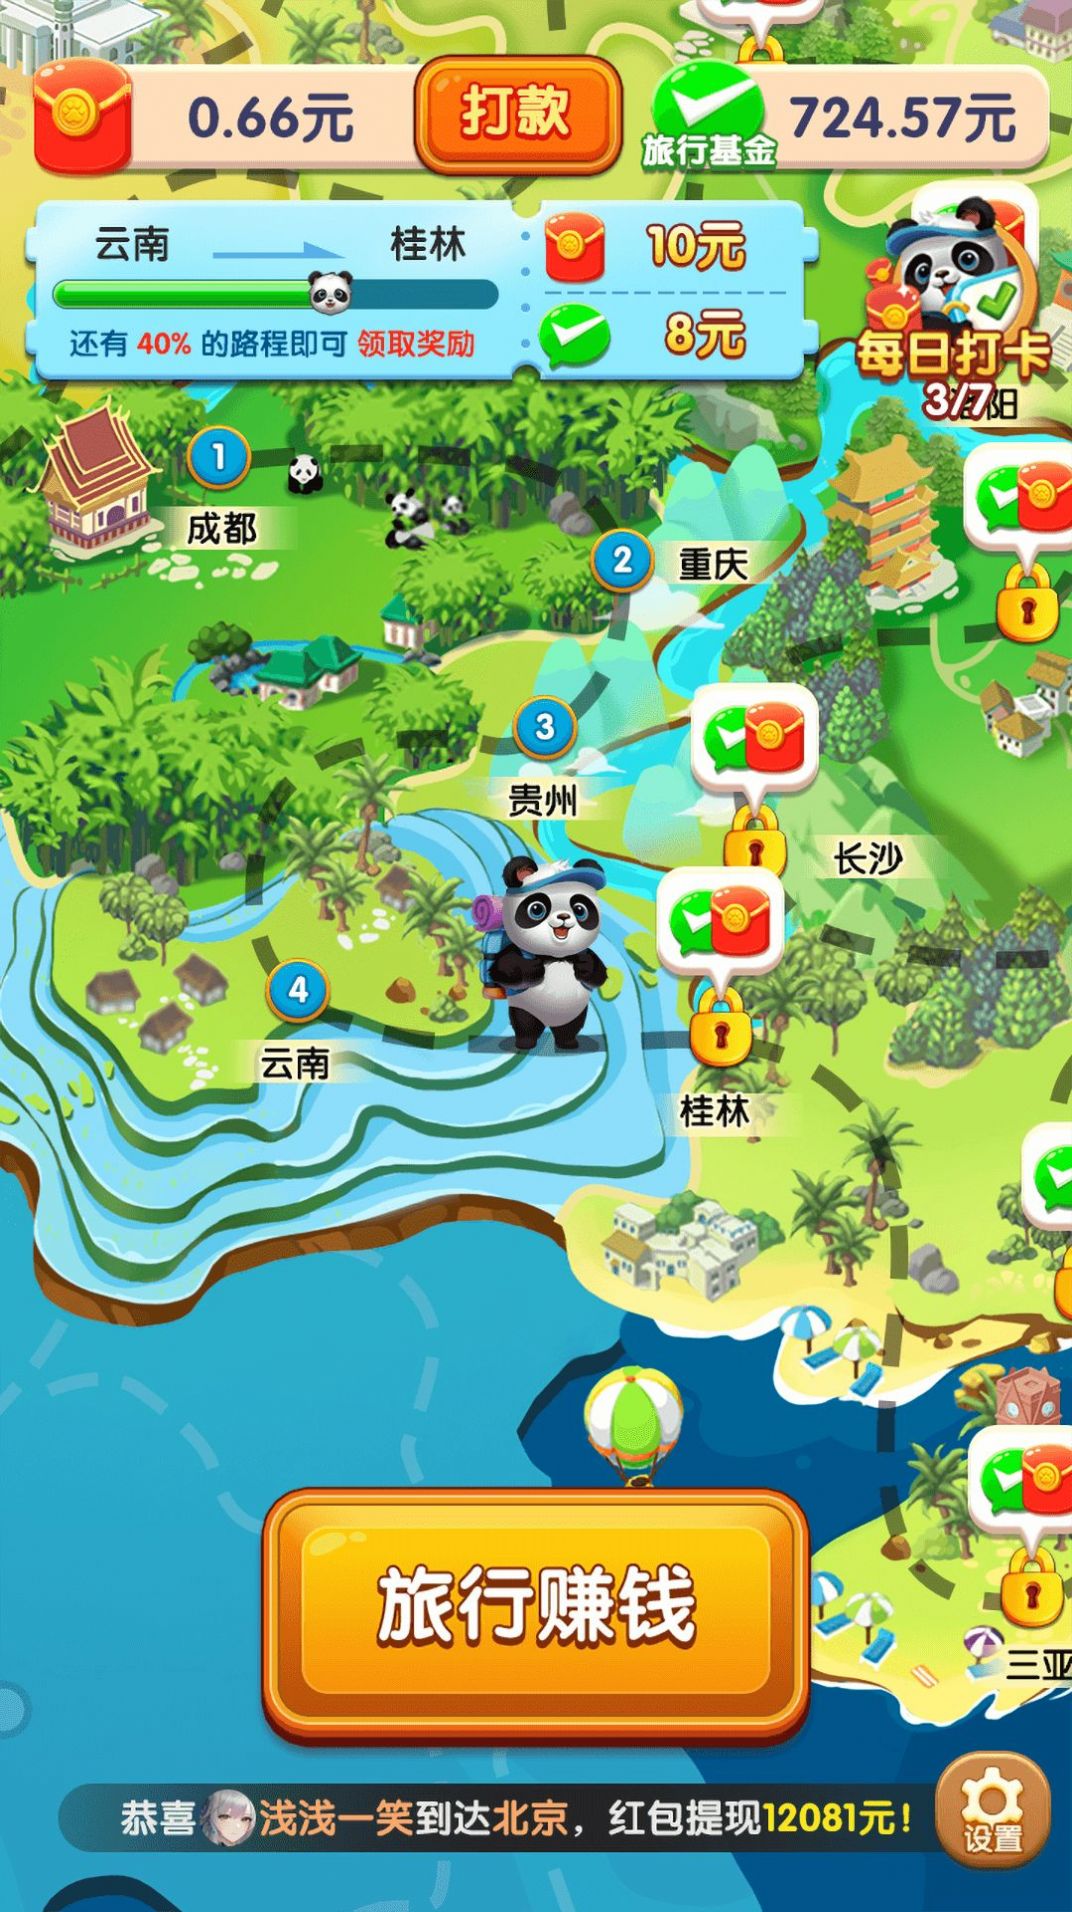 熊猫爱旅行1.2.4.0版截图(3)